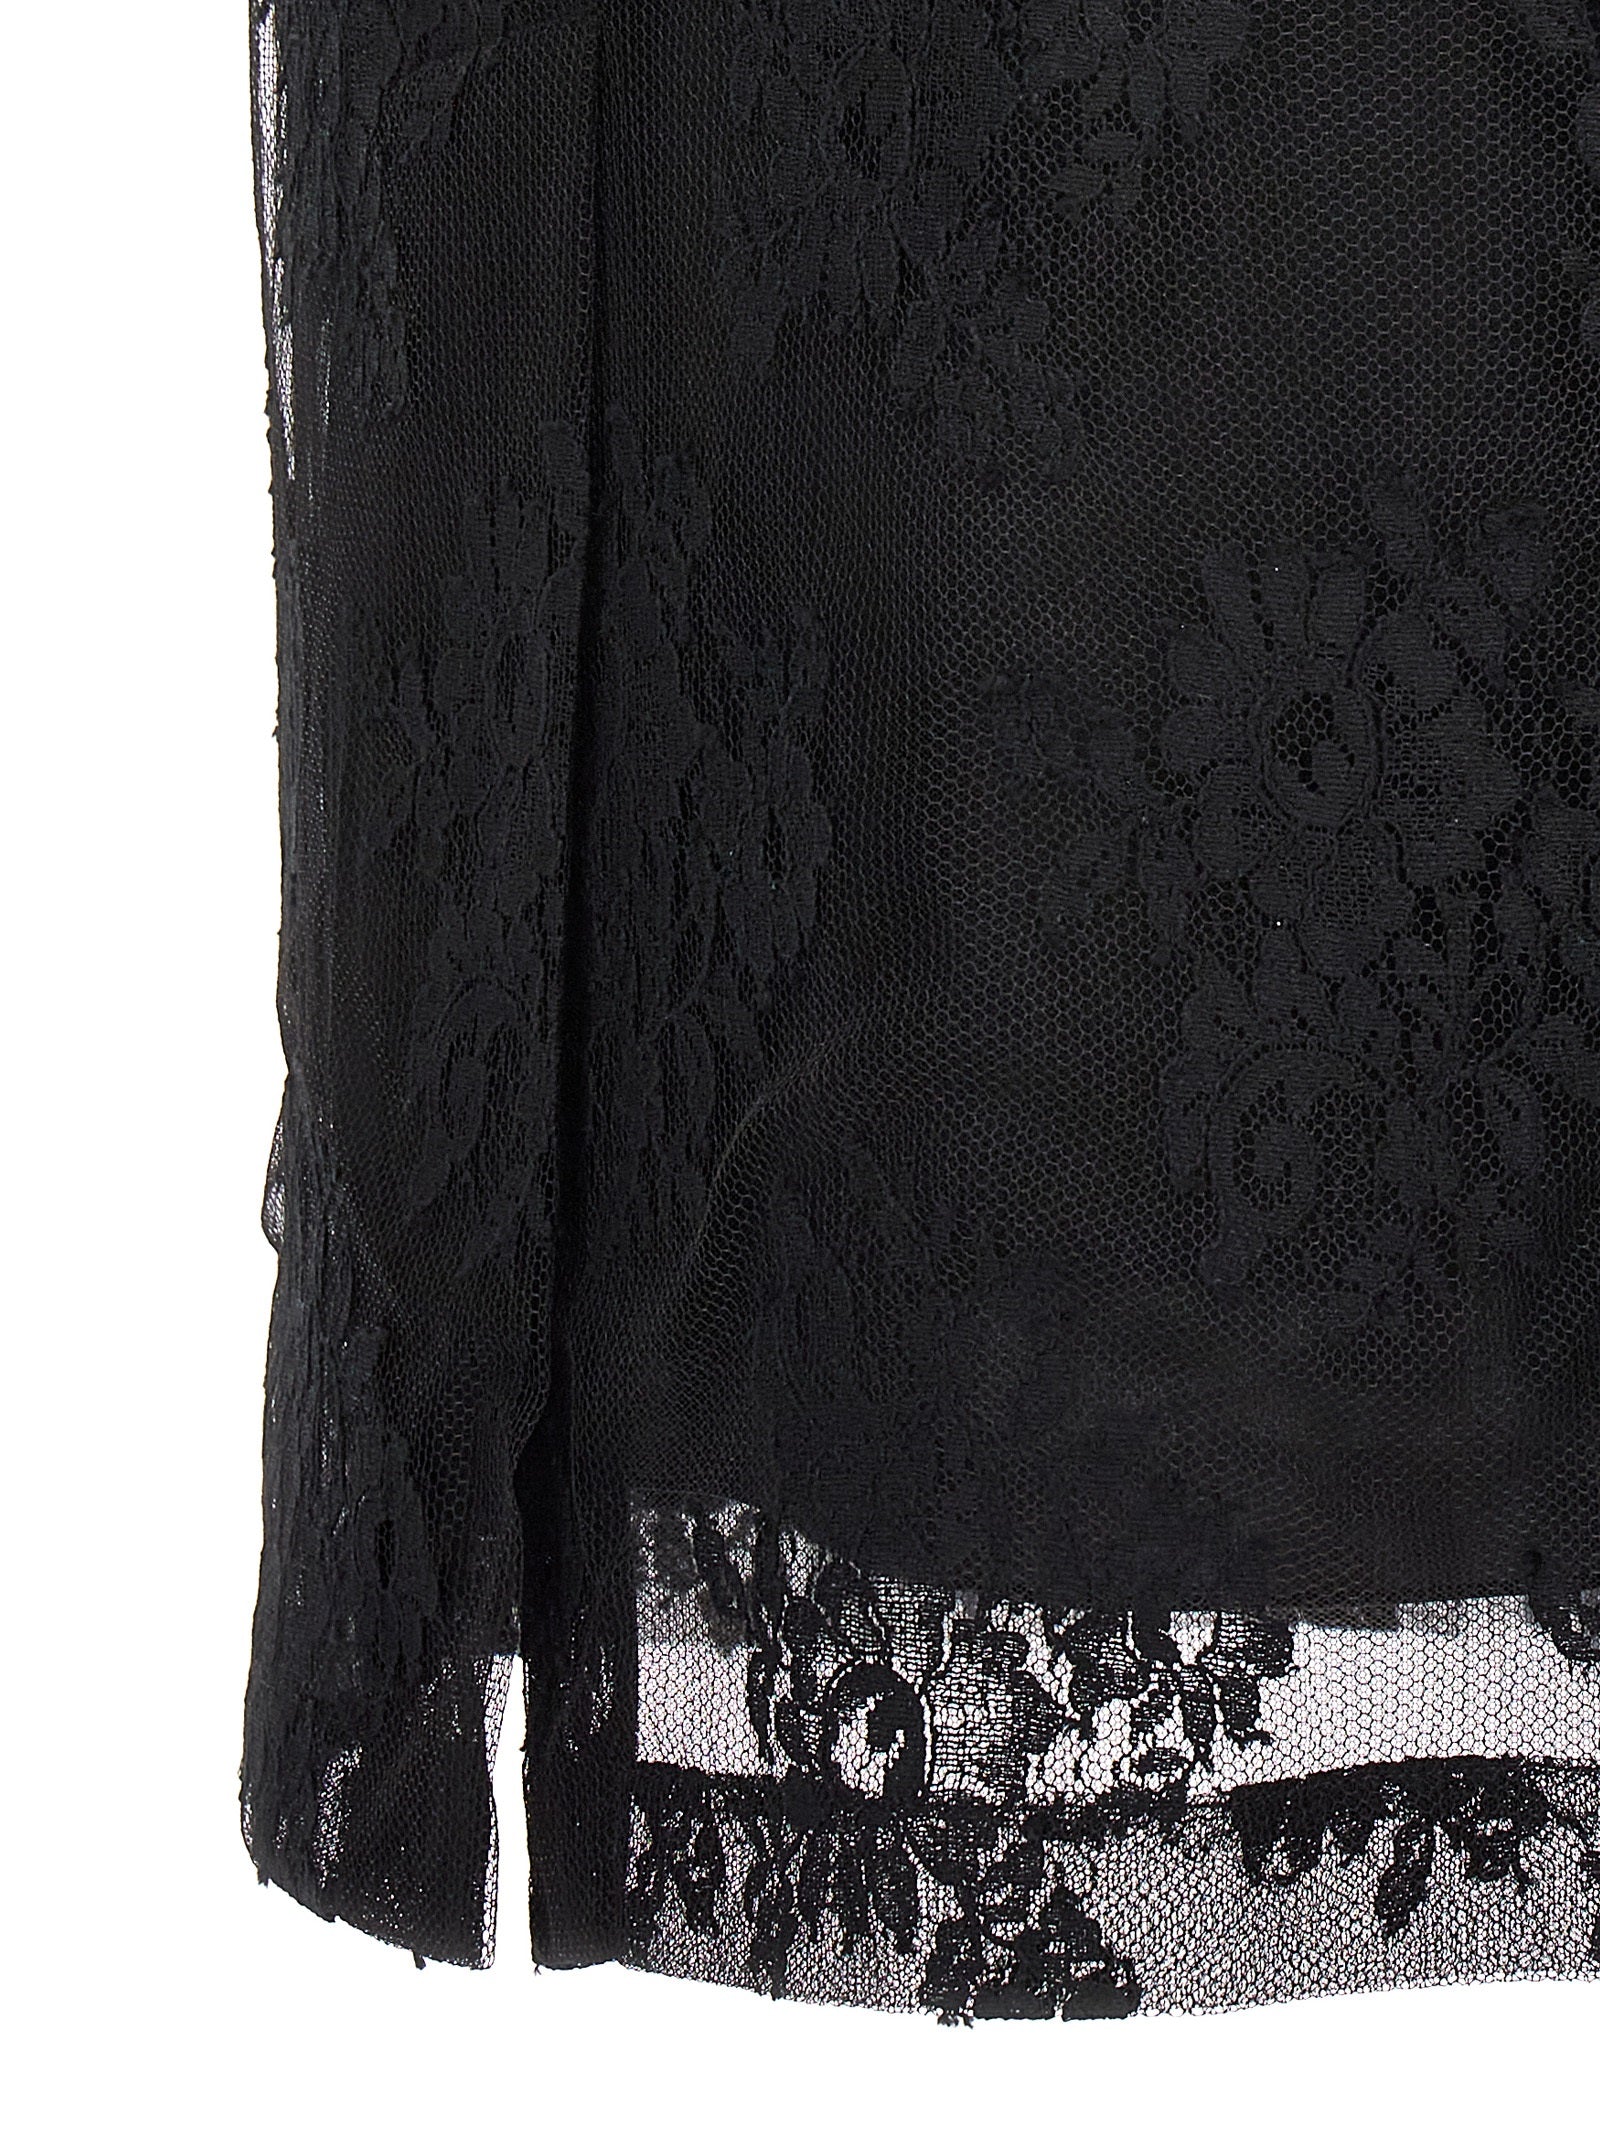 Shop Dolce & Gabbana Lace Sheath Skirt Skirts Black